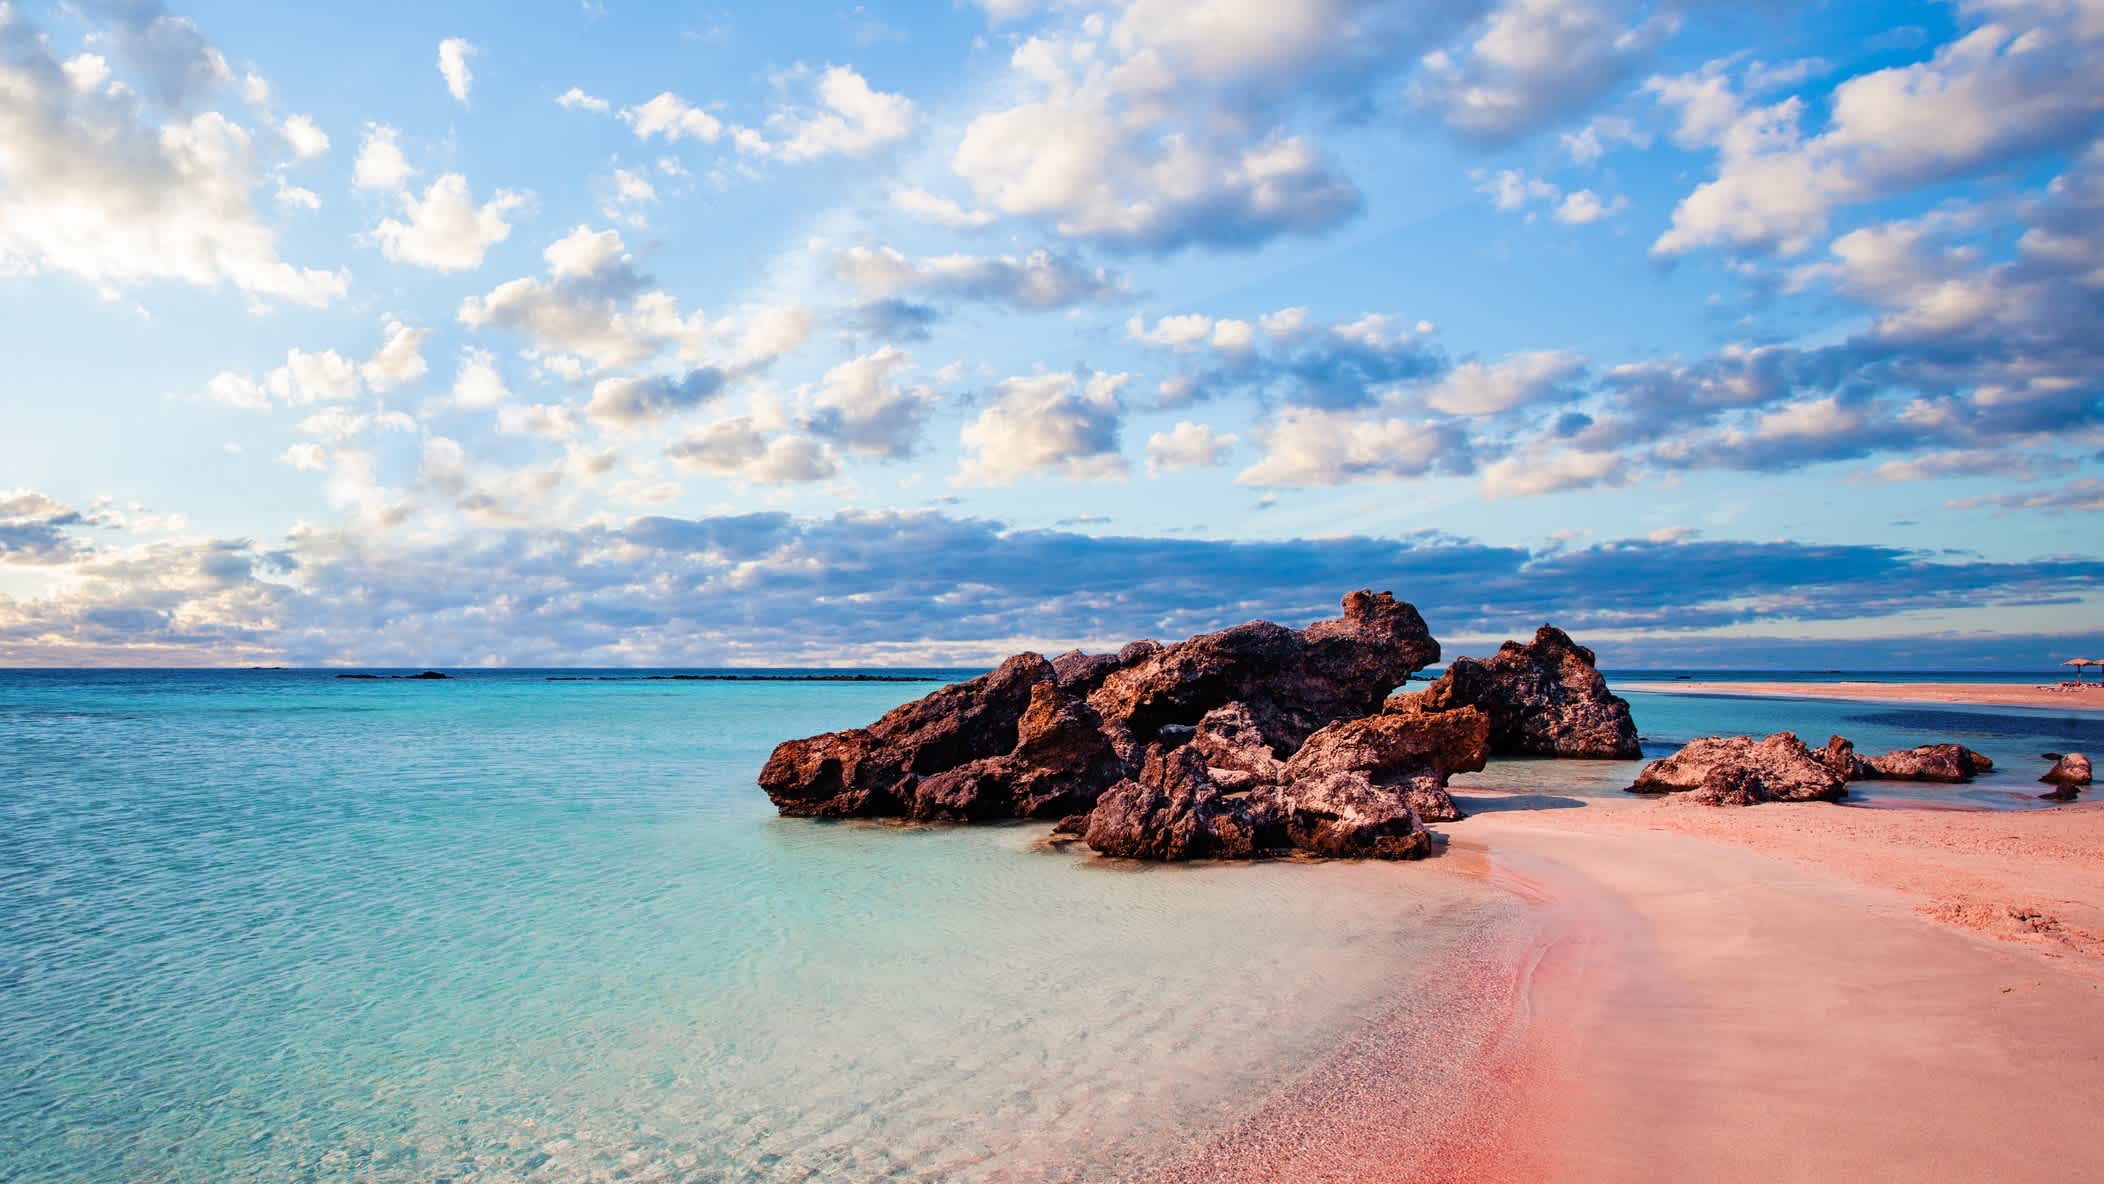 Elafonissi Strand mit rosa Sand auf Kreta, Griechenland bei Sonnenschein und Wolken am Himmel.